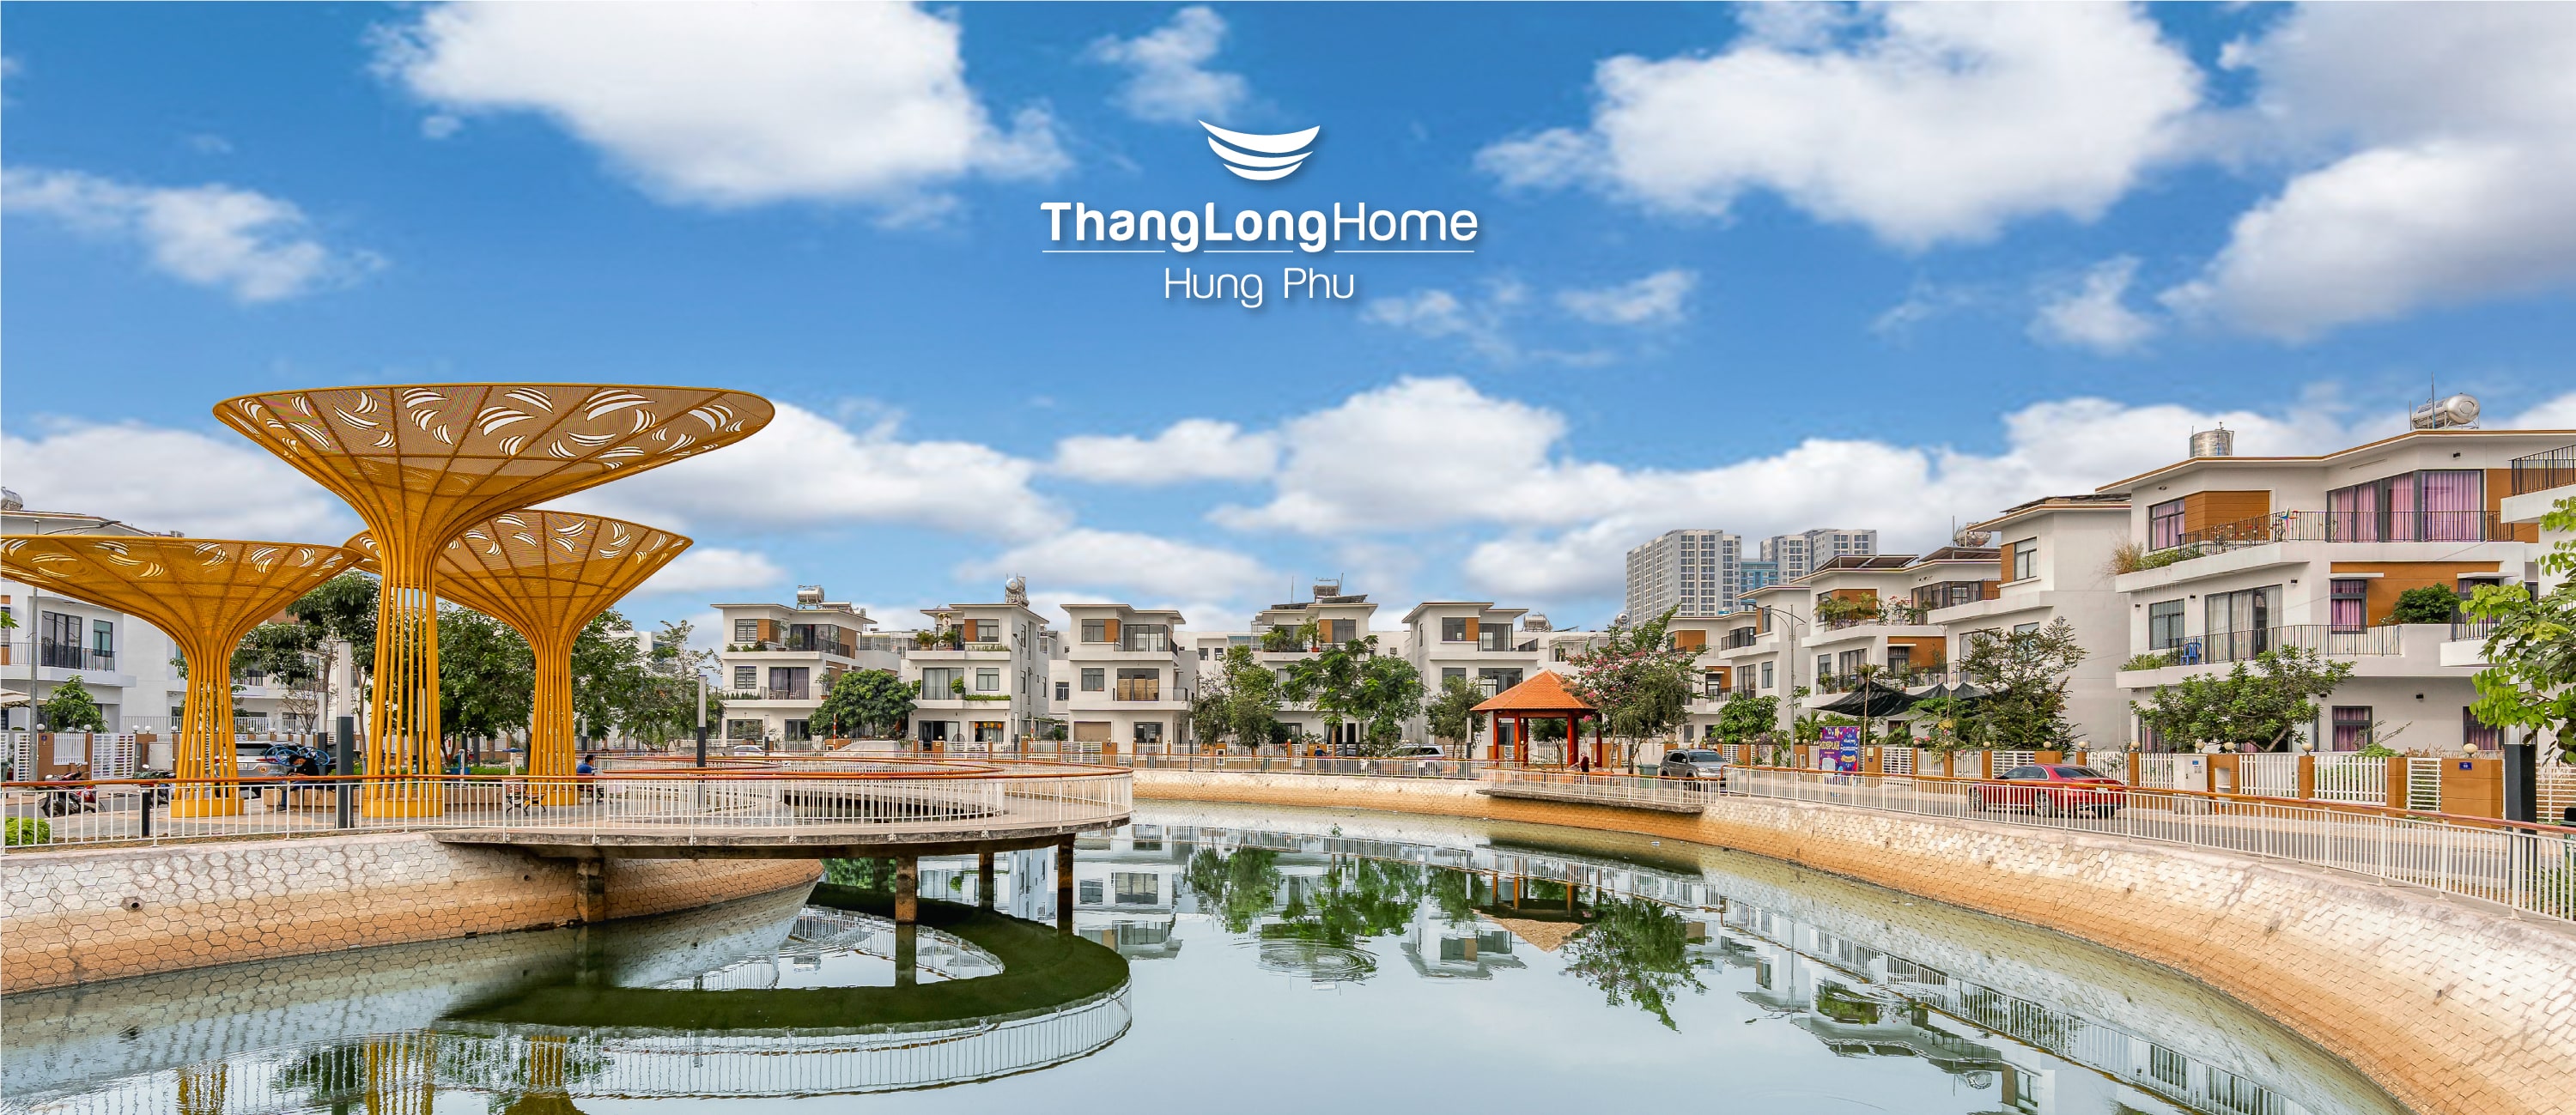 Thang Long Home - Hưng Phú, <br> Nơi hồ trong phố, nơi nhà trong hoa